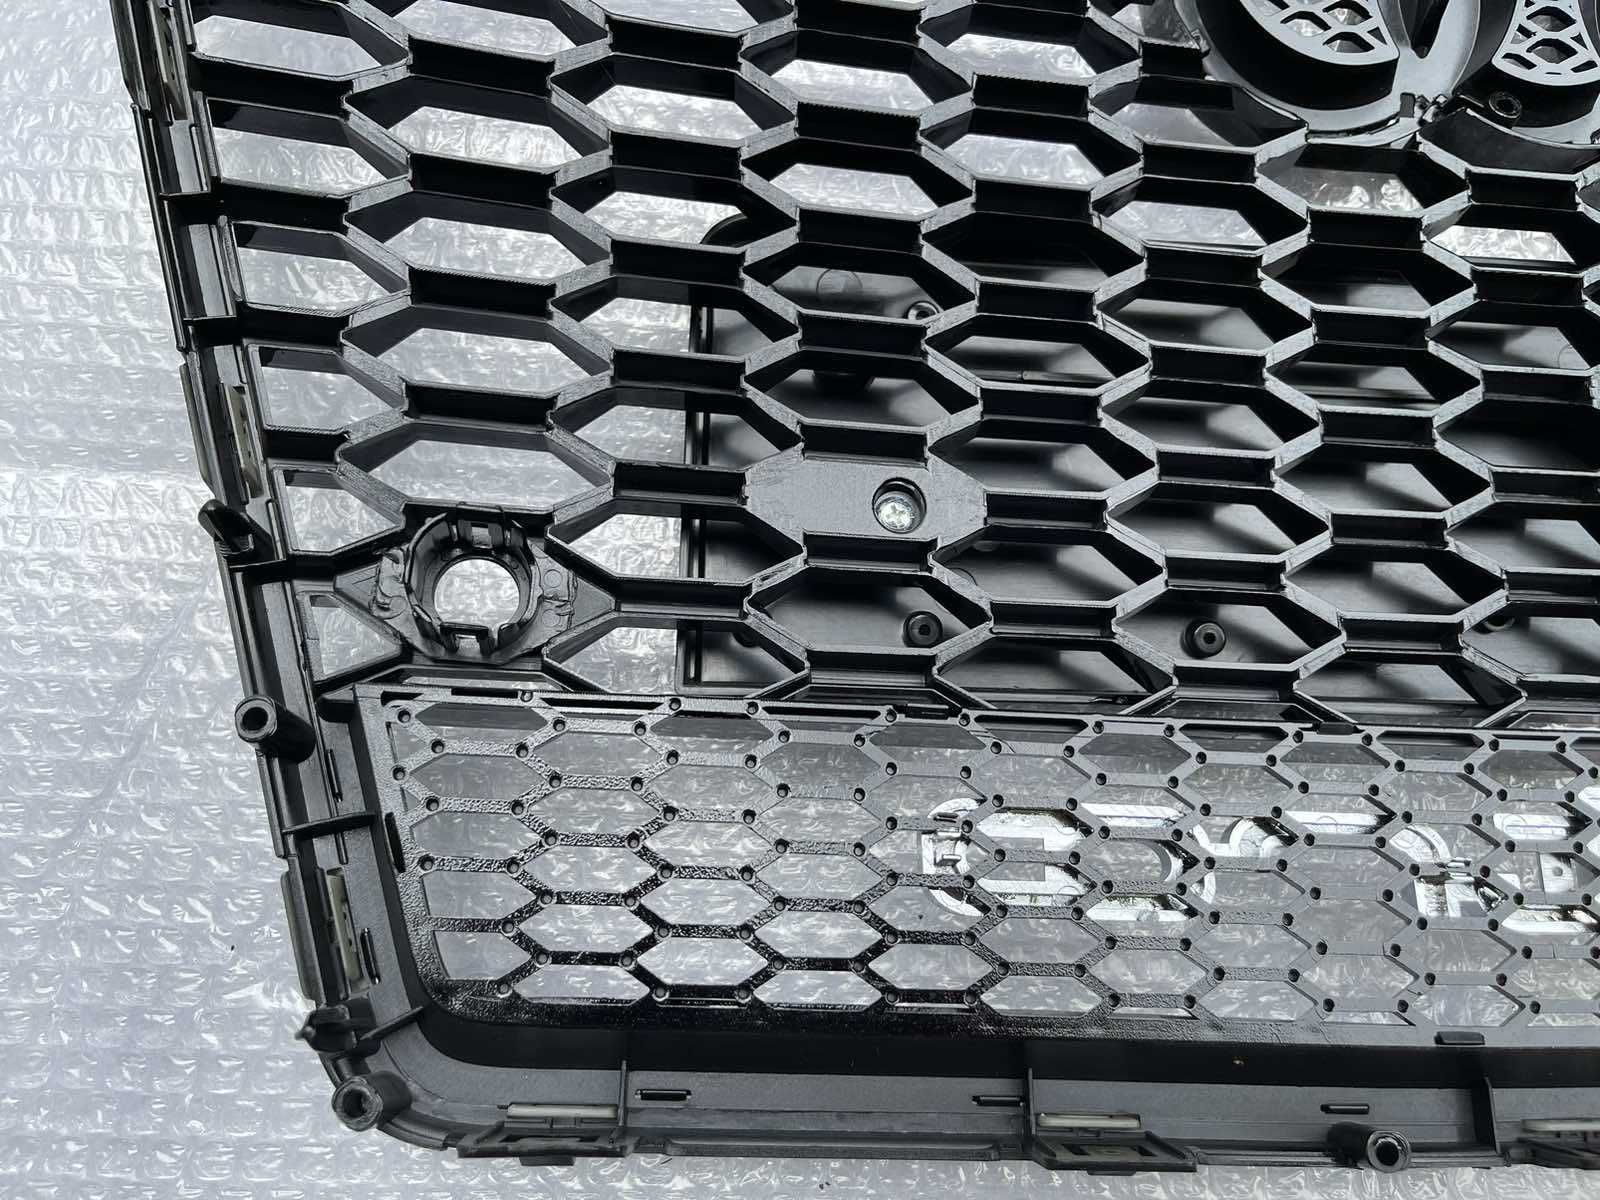 Решетка радиатора Audi A7 4G (10-15) тюнинг решітка RS7 з quattro